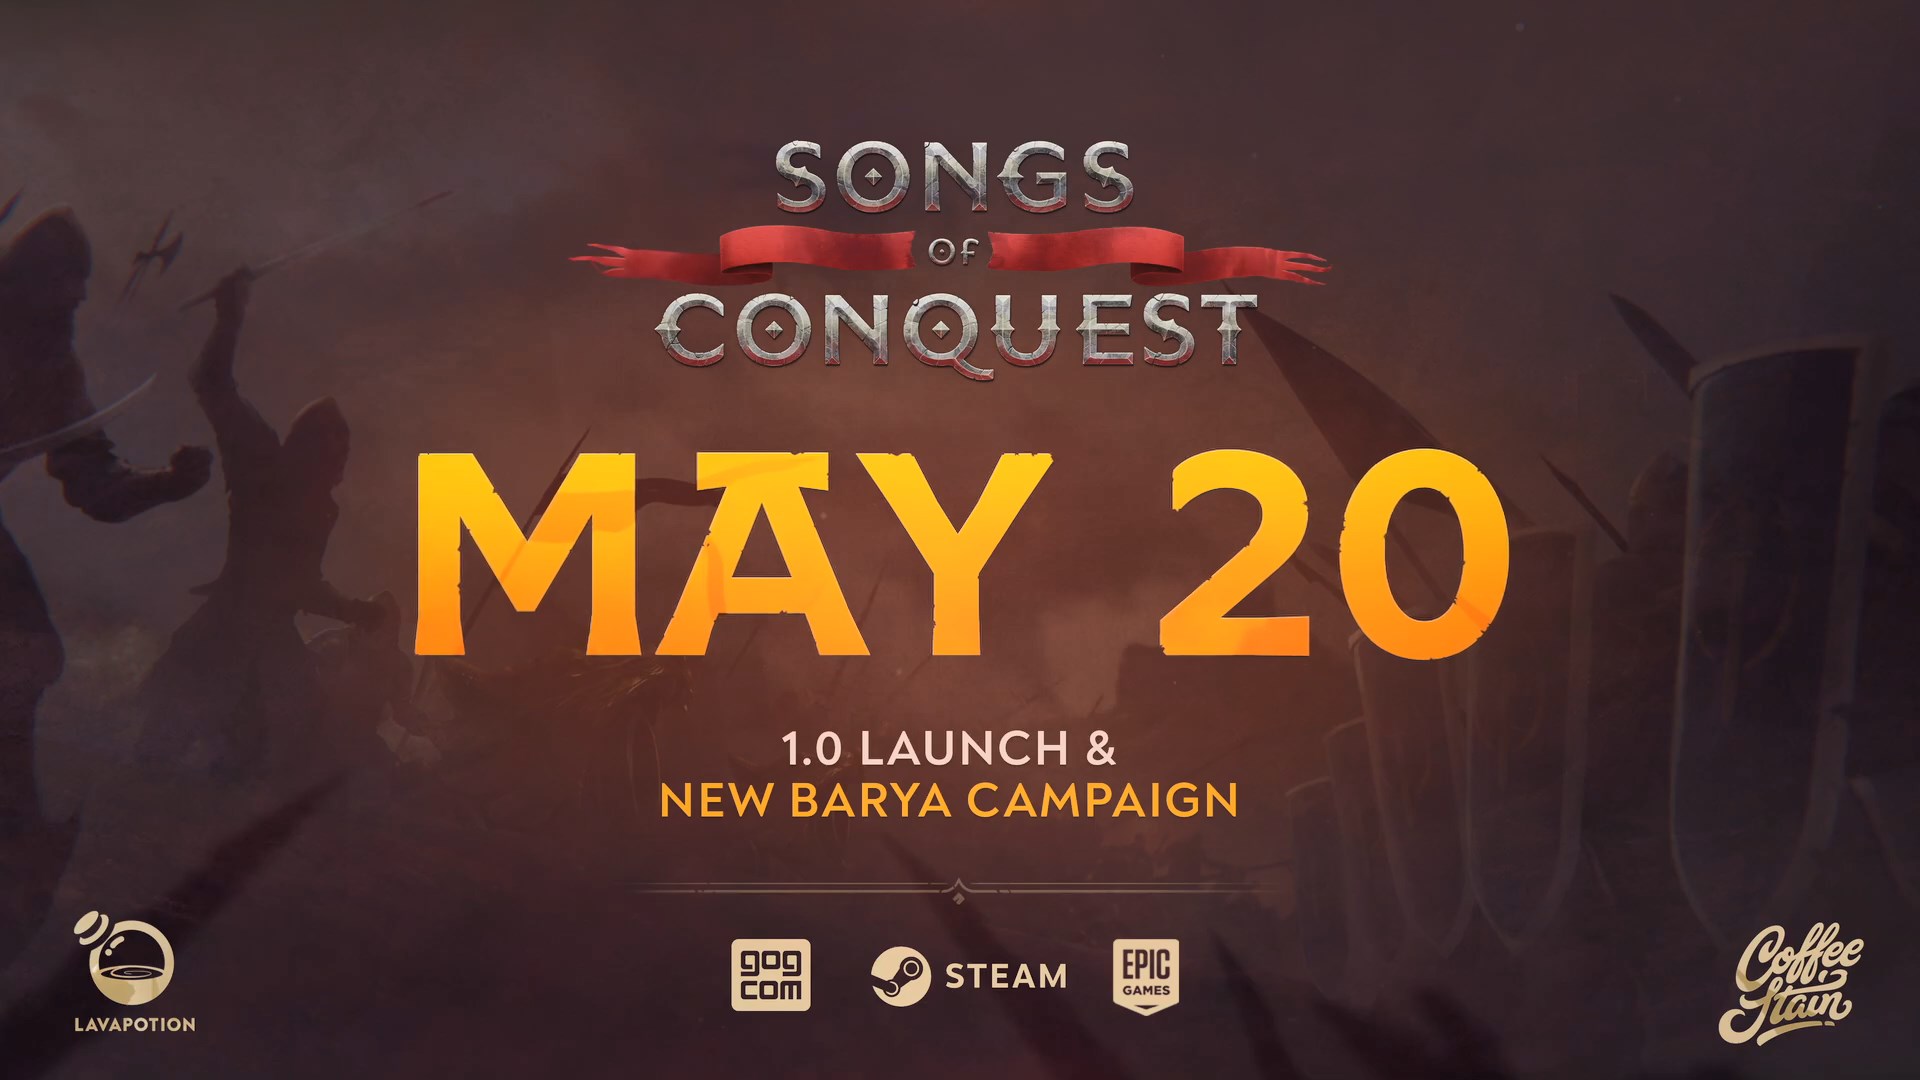 回合制战略游戏《征服之歌》即将结束抢先体验 5月20日正式发售